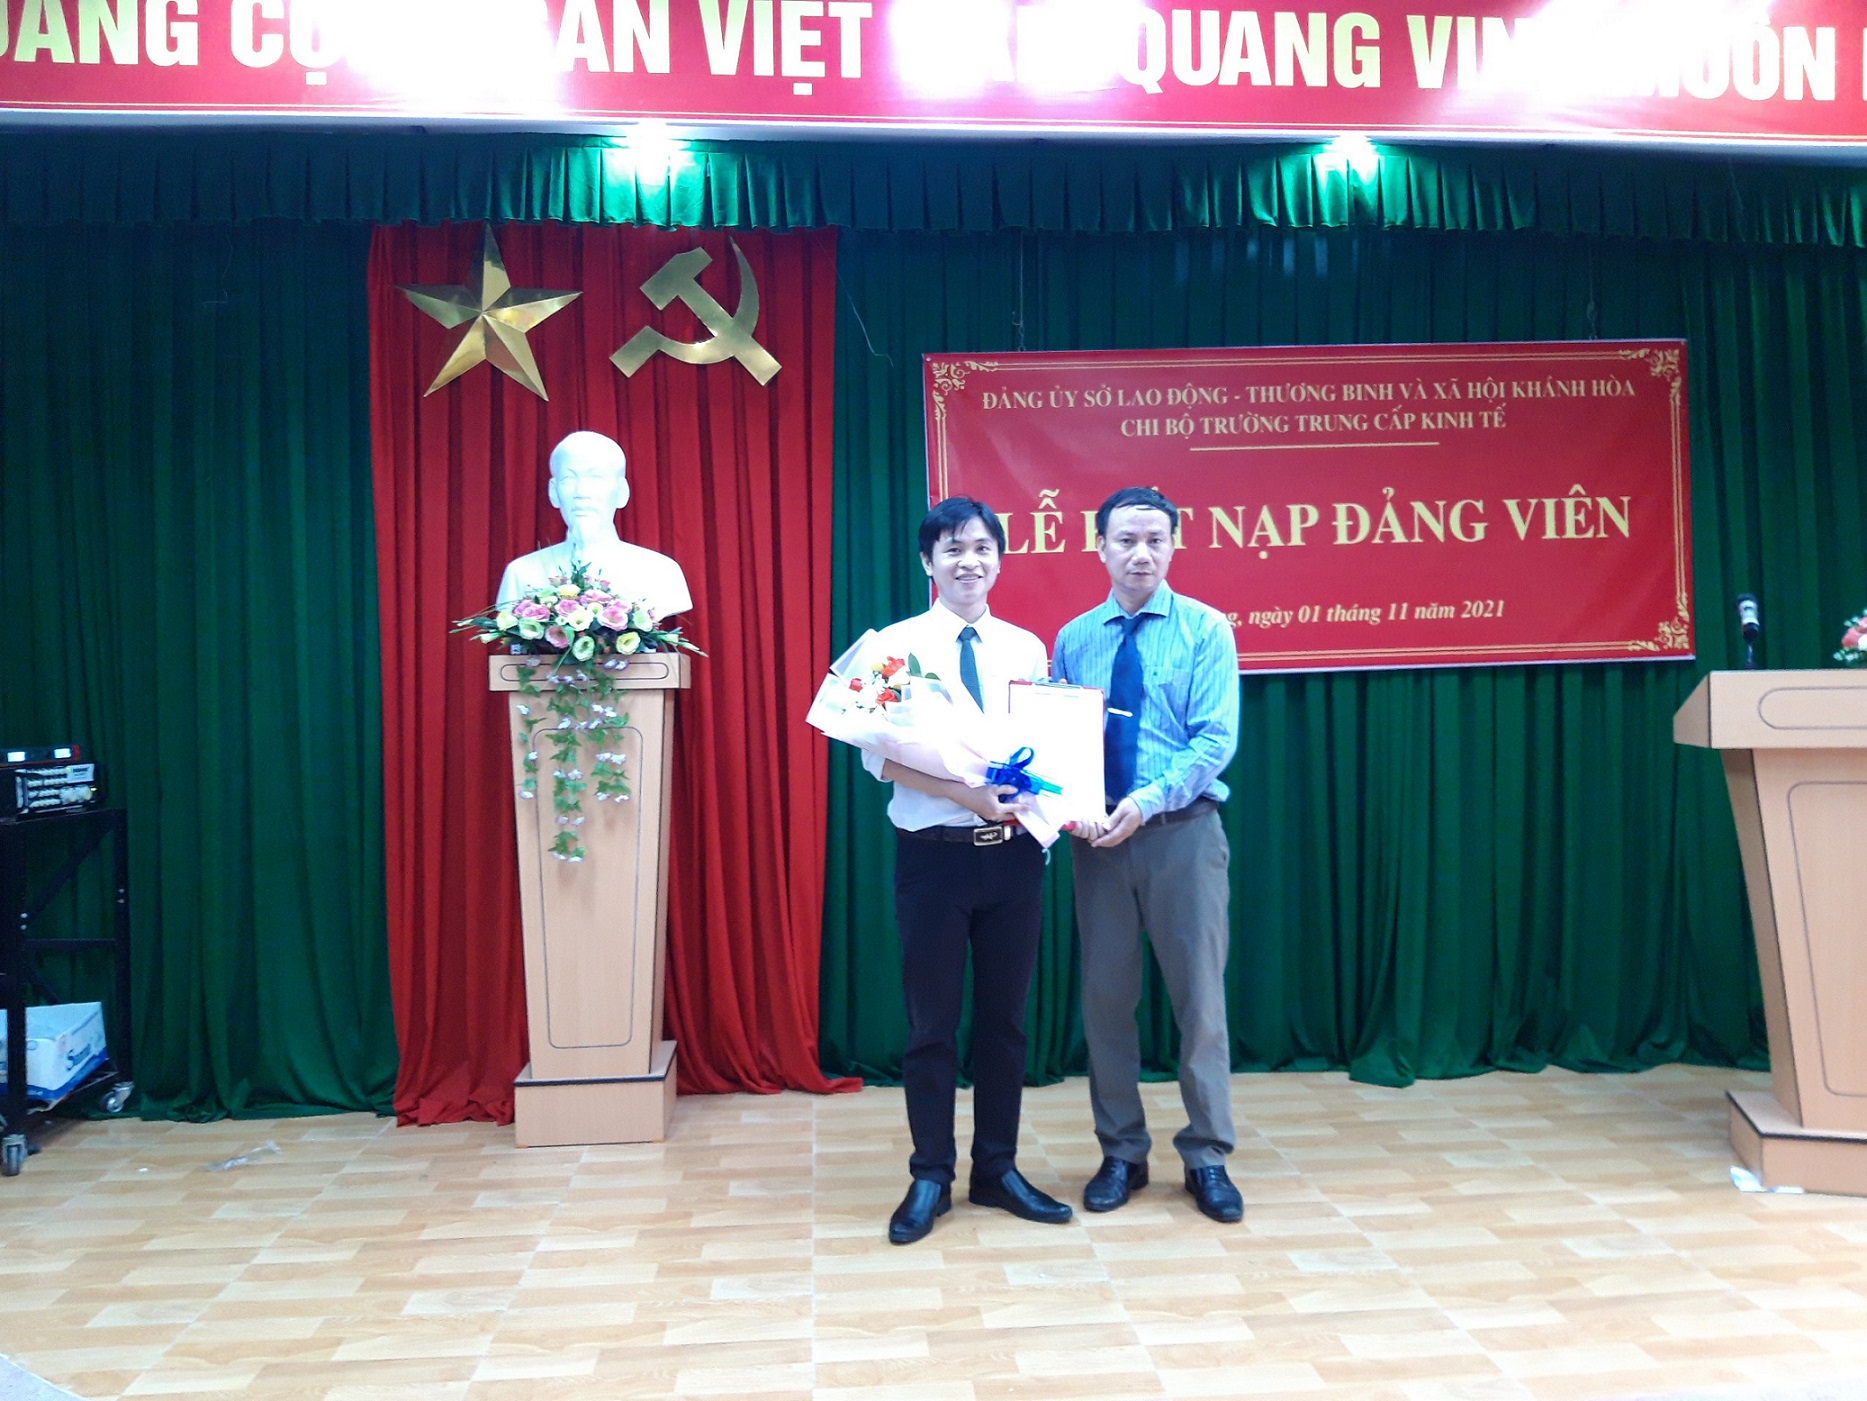 Lễ Kết nạp đảng viên cho quần chúng Nguyễn Thị Anh và Nguyễn Văn Hào